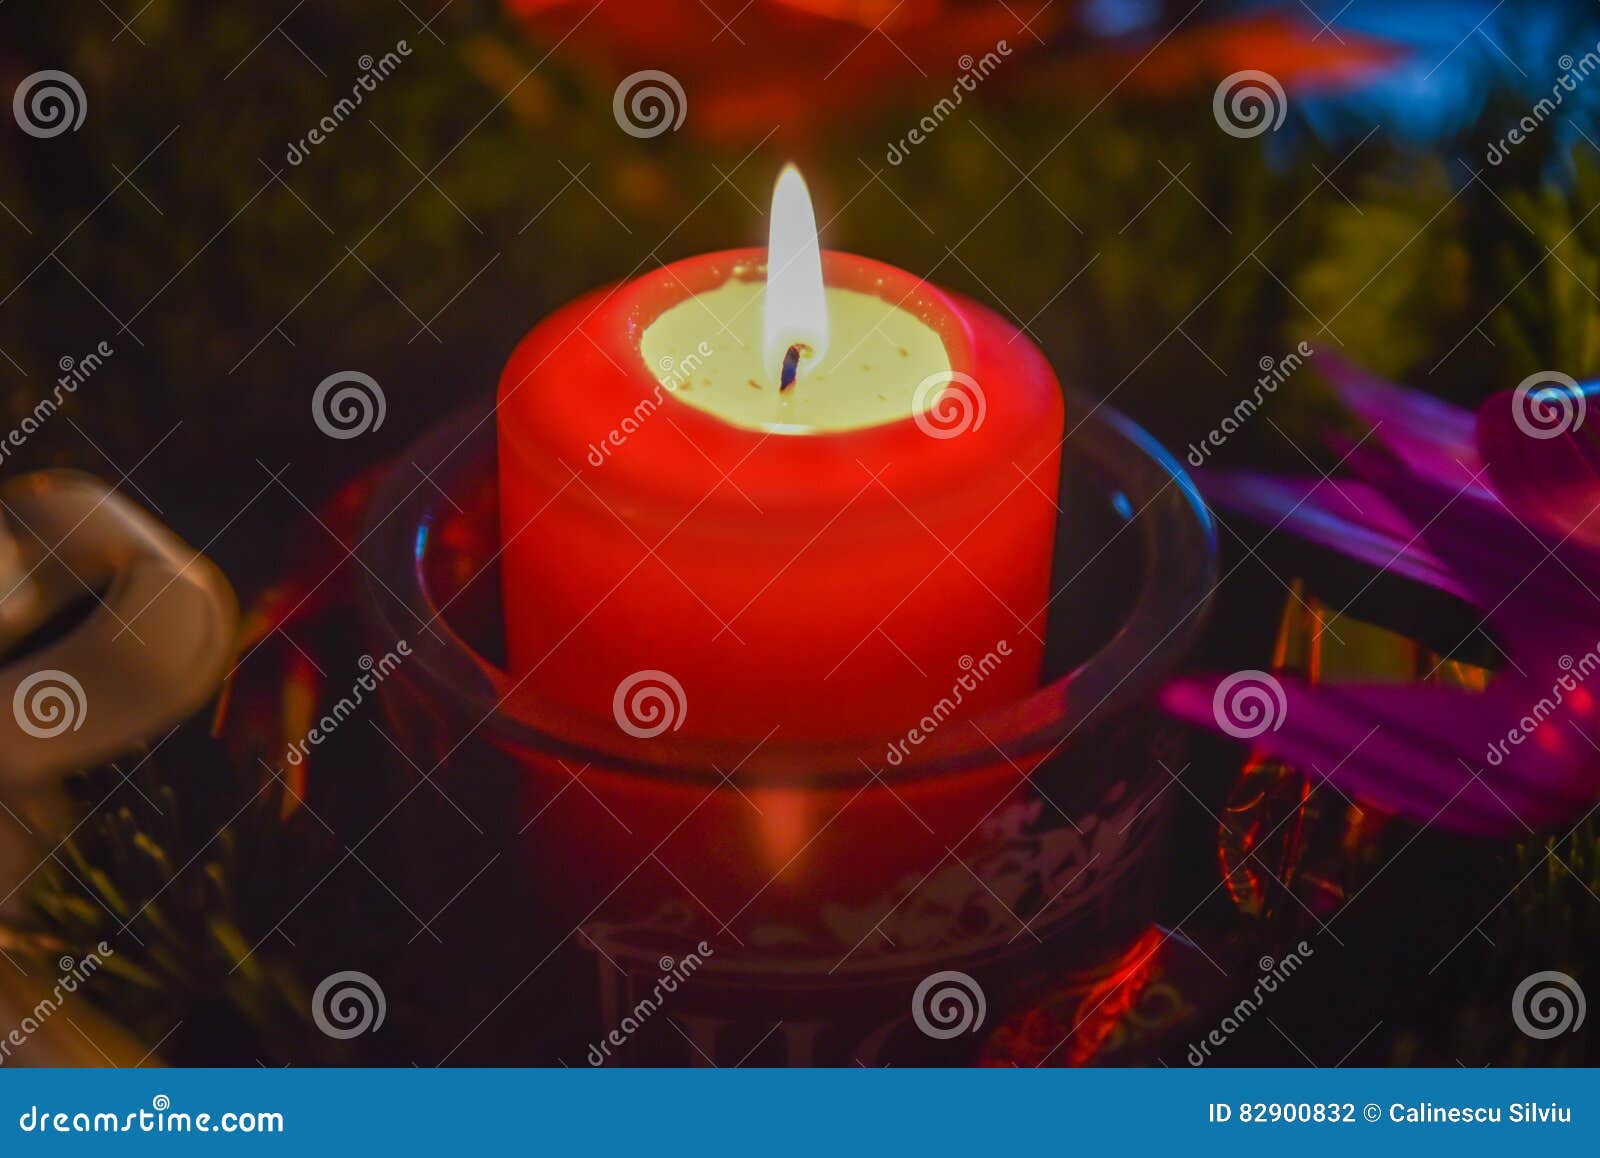 Decorative Xmas Candlelight Stock Photo  Image of burning, celebrate